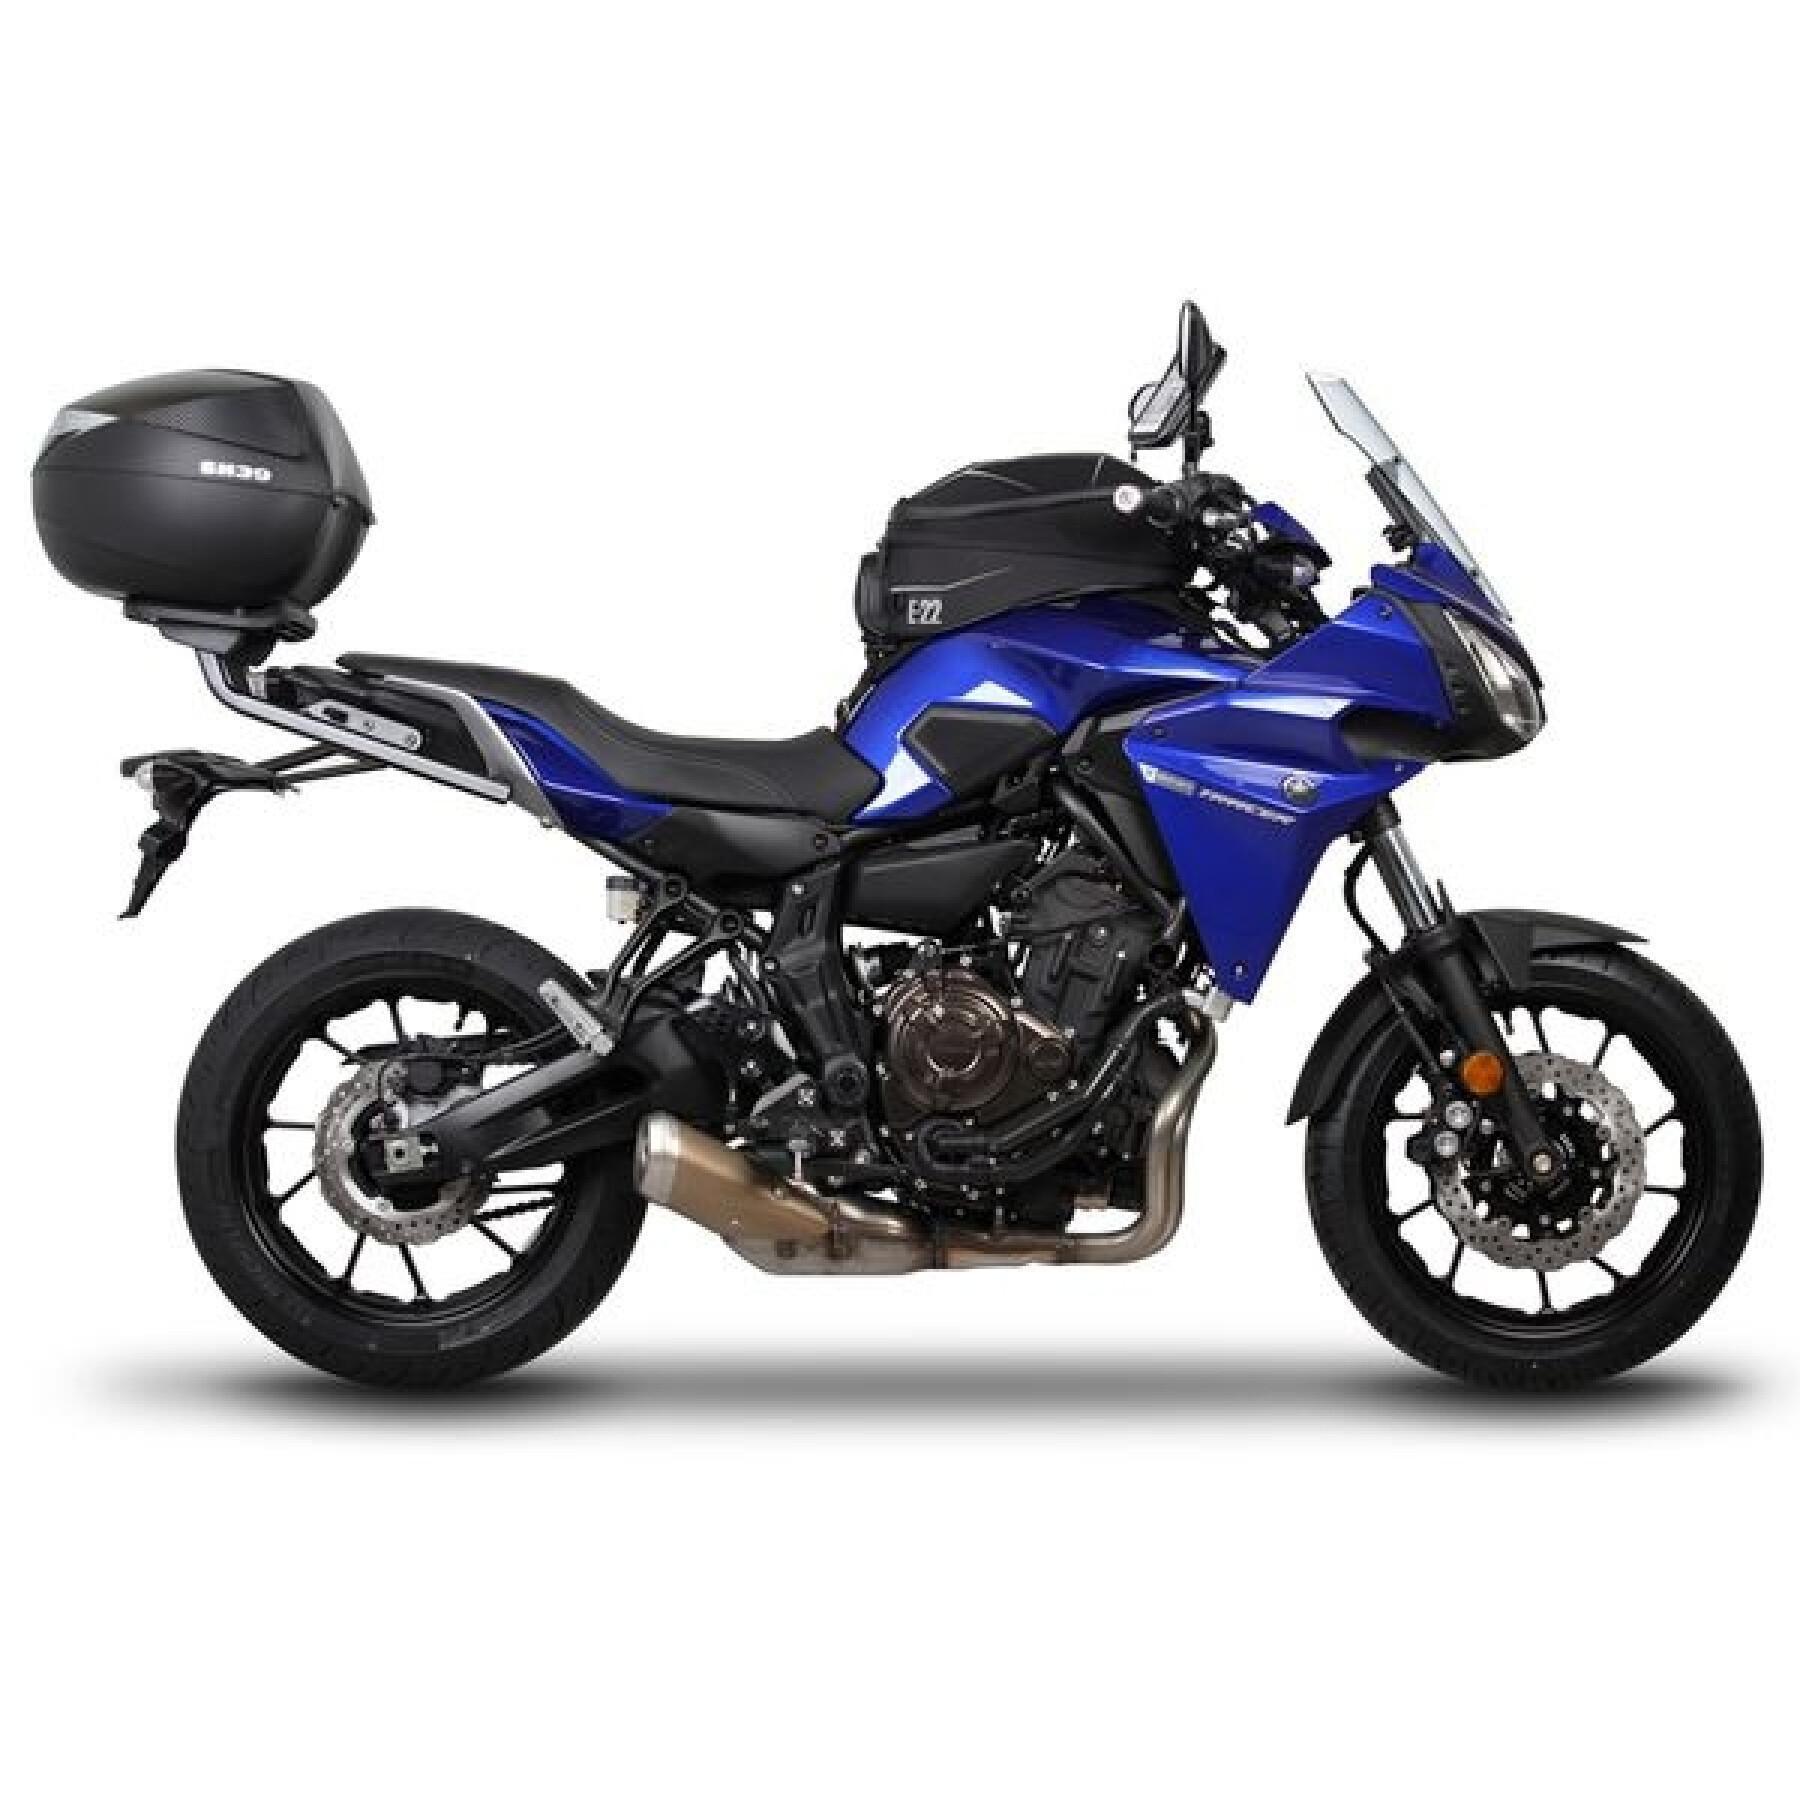 Top case de motos Shad Yamaha 700 Tracer (16 a 21)